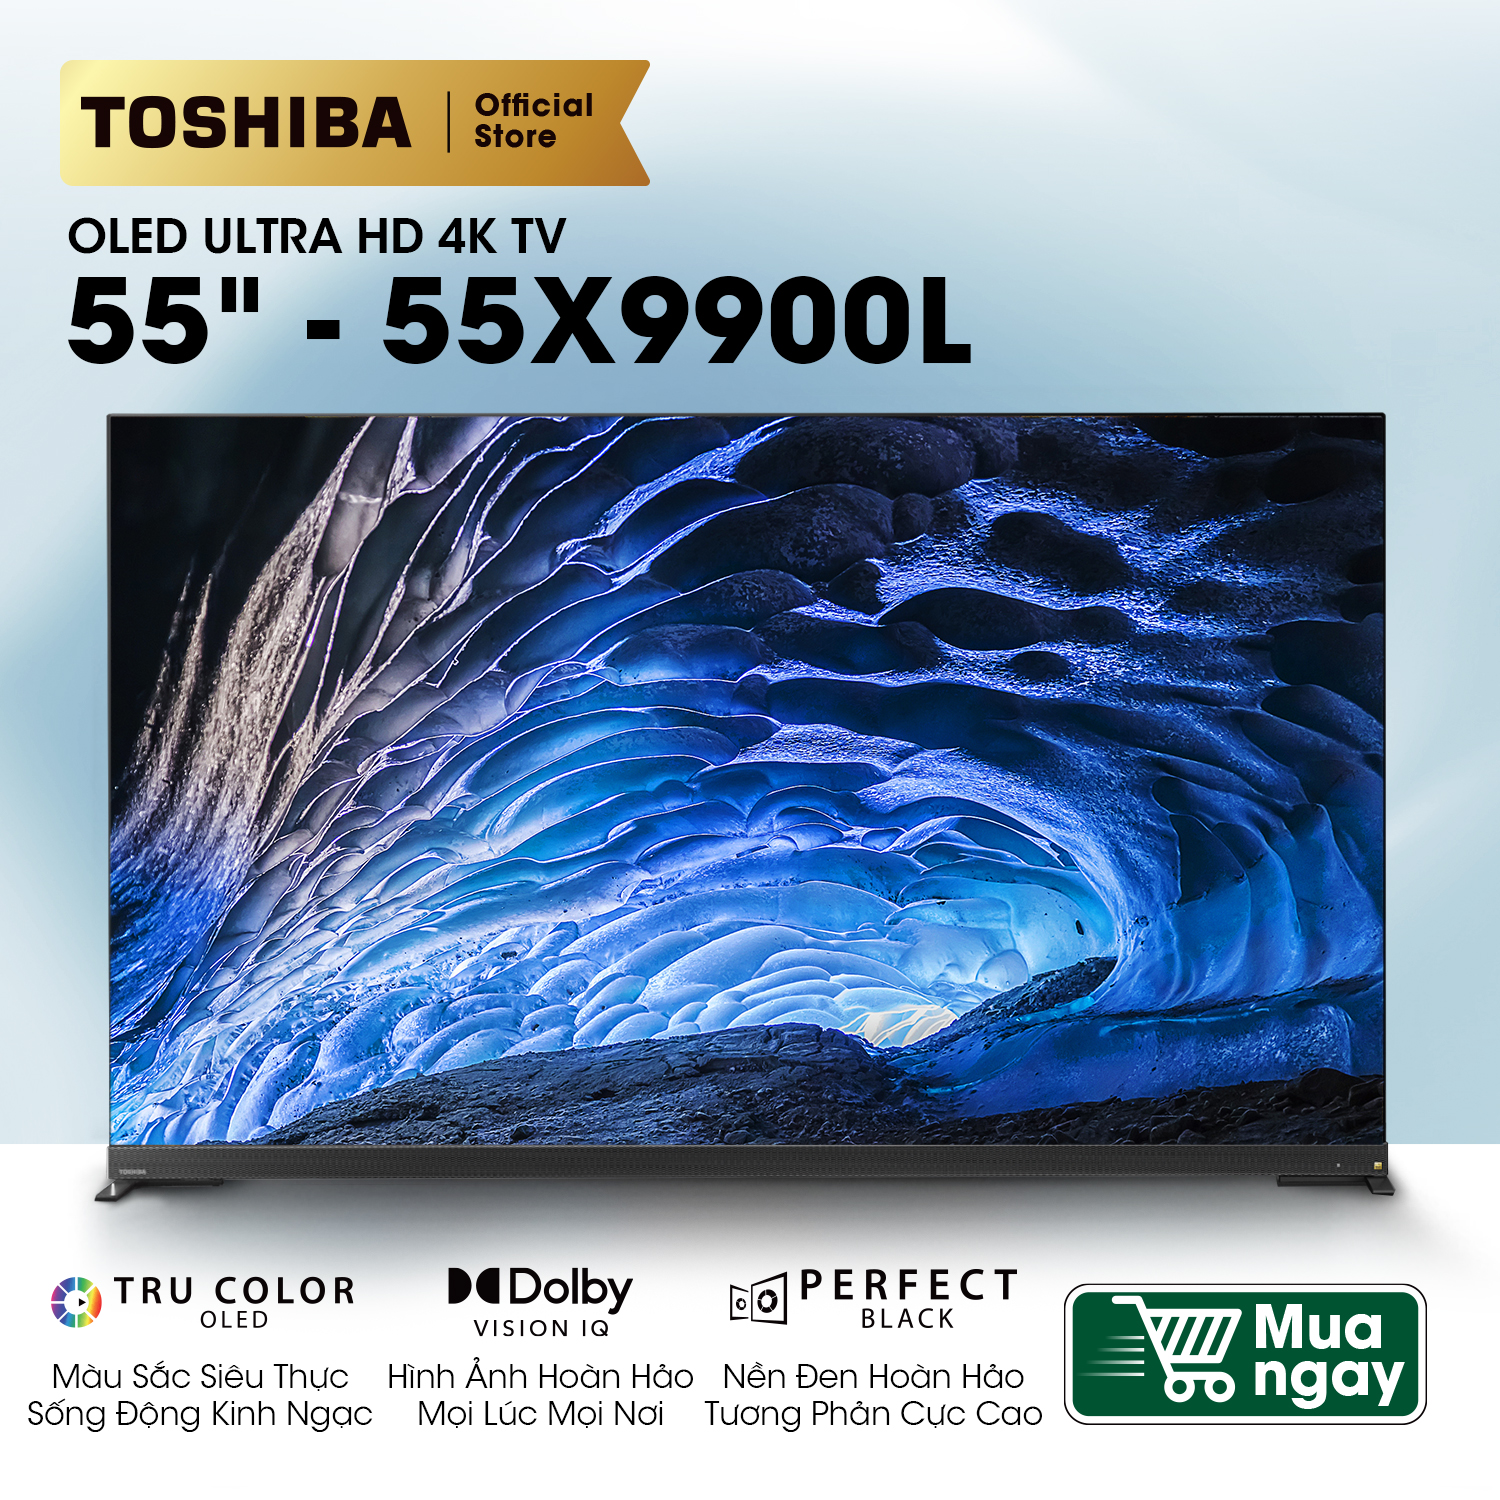 TV OLED 4K 55inch (55X9900L) - VIDDA TV - OLED 4K - Công nghệ âm thanh REGZA Power Audio Extreme - Màu sắc nguyên bản - Âm trầm mạnh mẽ - Loa 113W - Tần số quét 120Hz - Hàng chính hãng - Bảo hành 2 năm